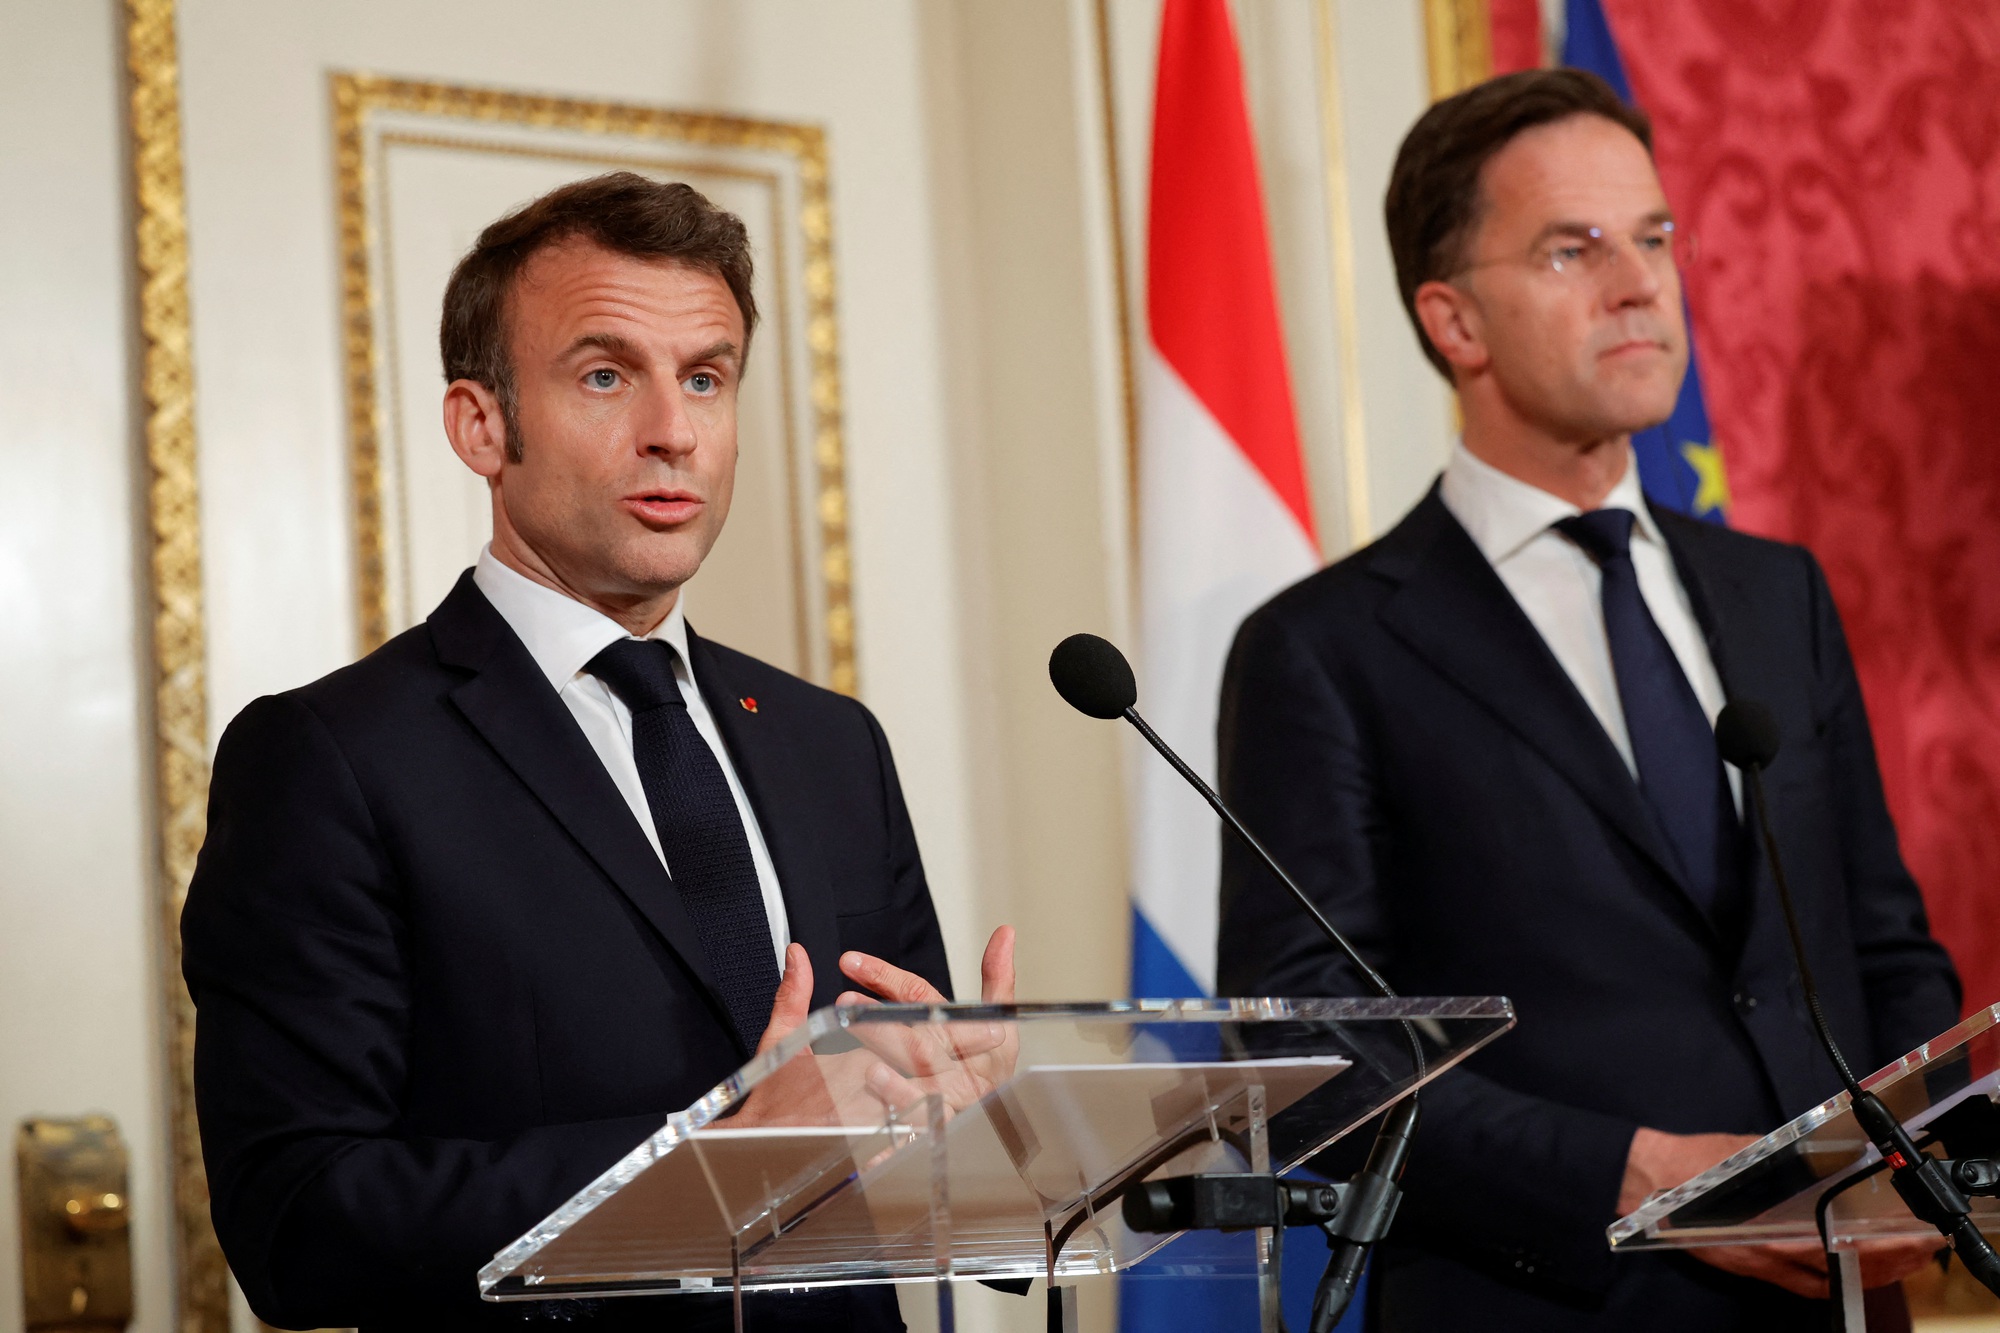 Tổng thống Macron nói Pháp không phải 'chư hầu' của Mỹ - Ảnh 1.